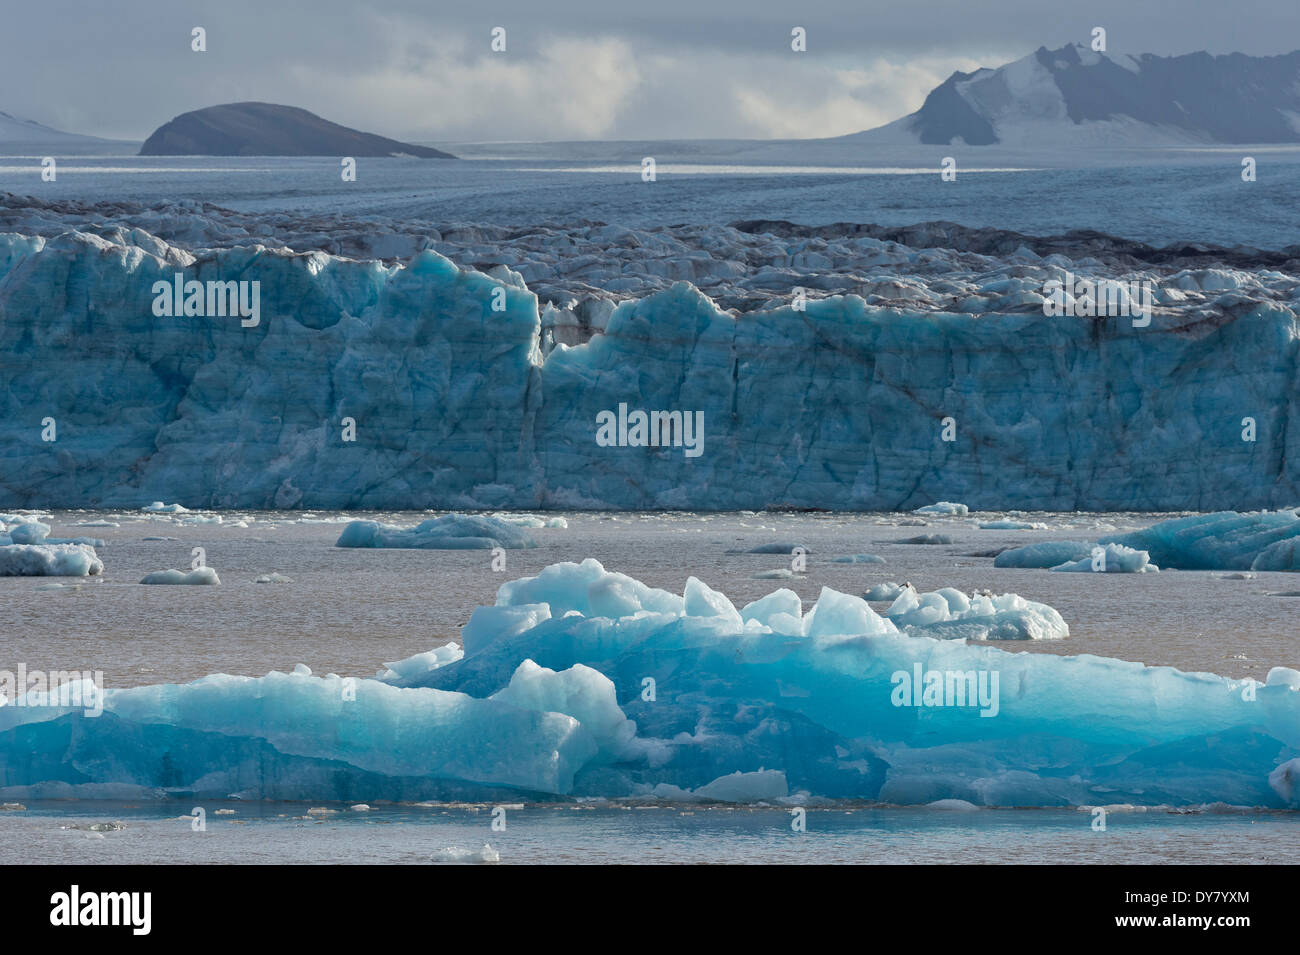 La dérive dans la mer de glace, glacier Kongsbreen, Kongsfjorden, Spitsbergen, Svalbard, îles Svalbard et Jan Mayen (Norvège) Banque D'Images